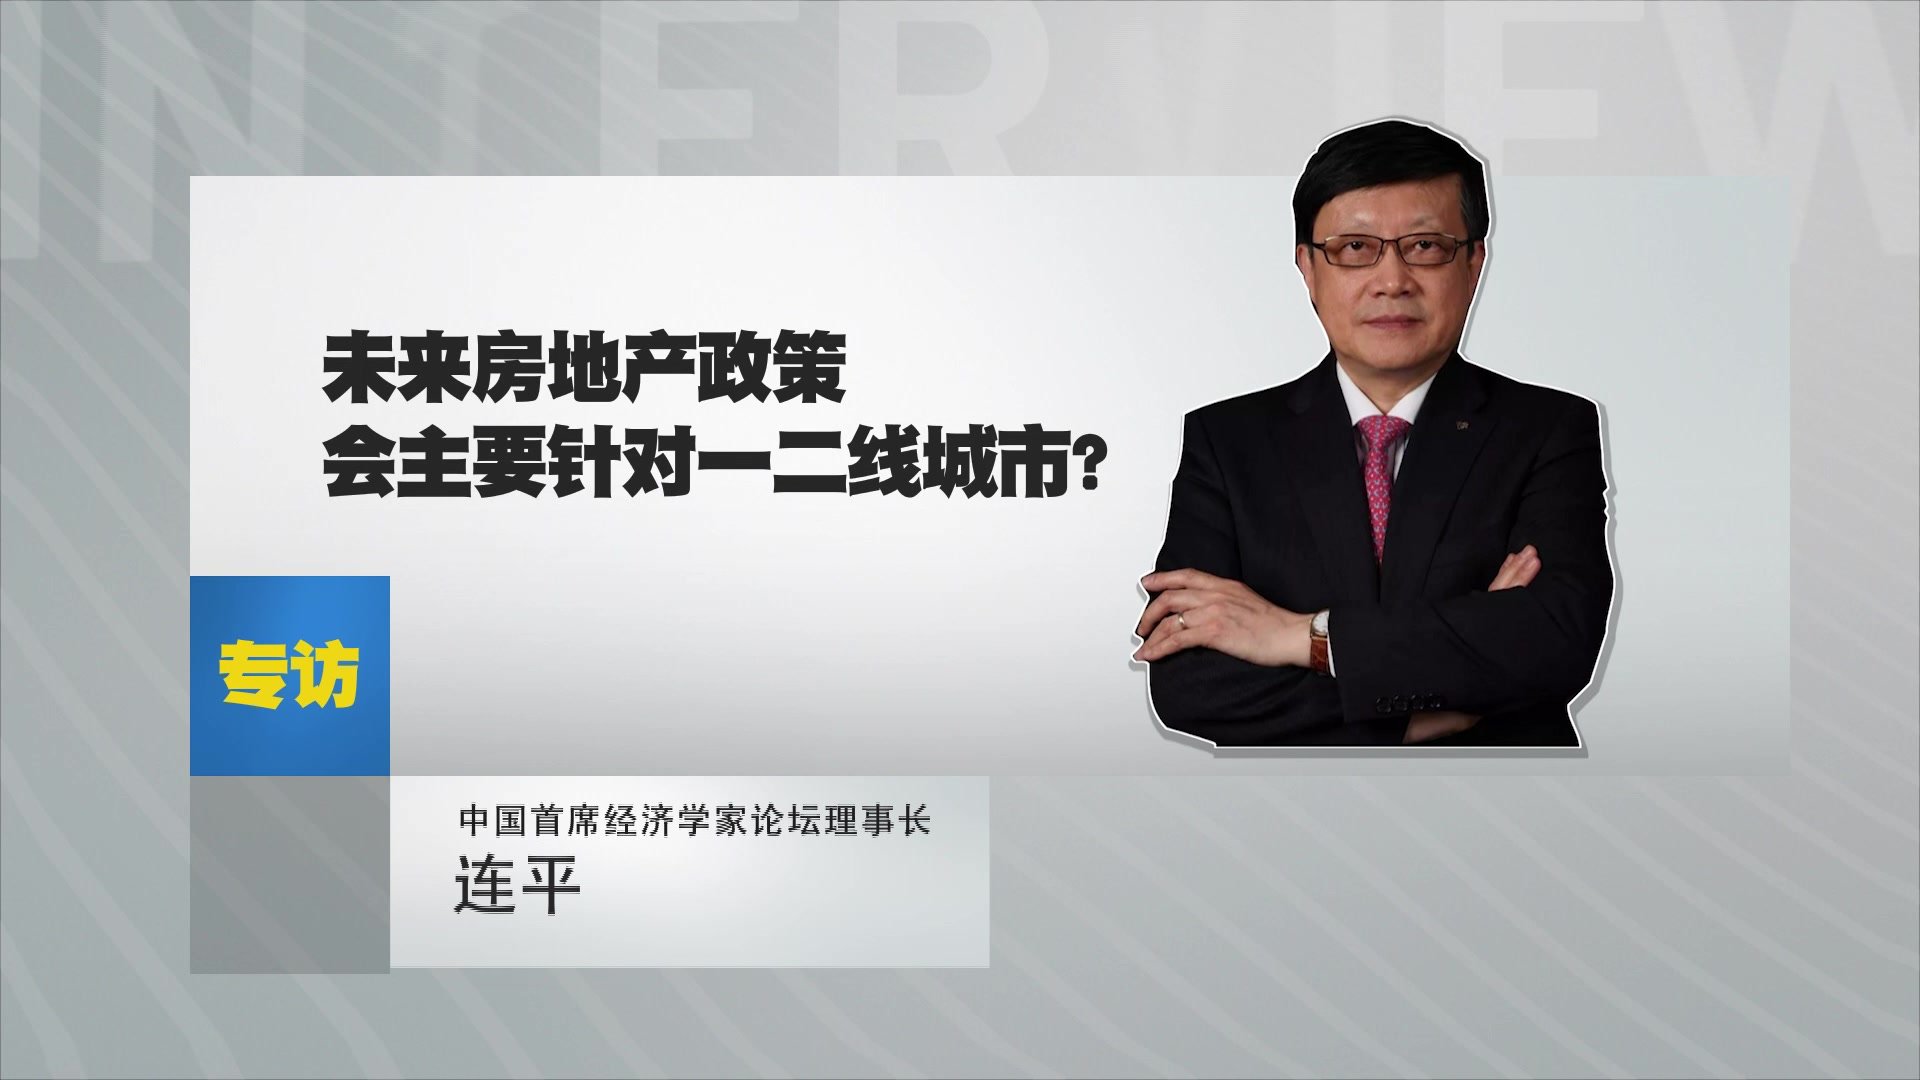 中国首席经济学家论坛理事长连平：未来房地产政策会主要针对一二线城市？